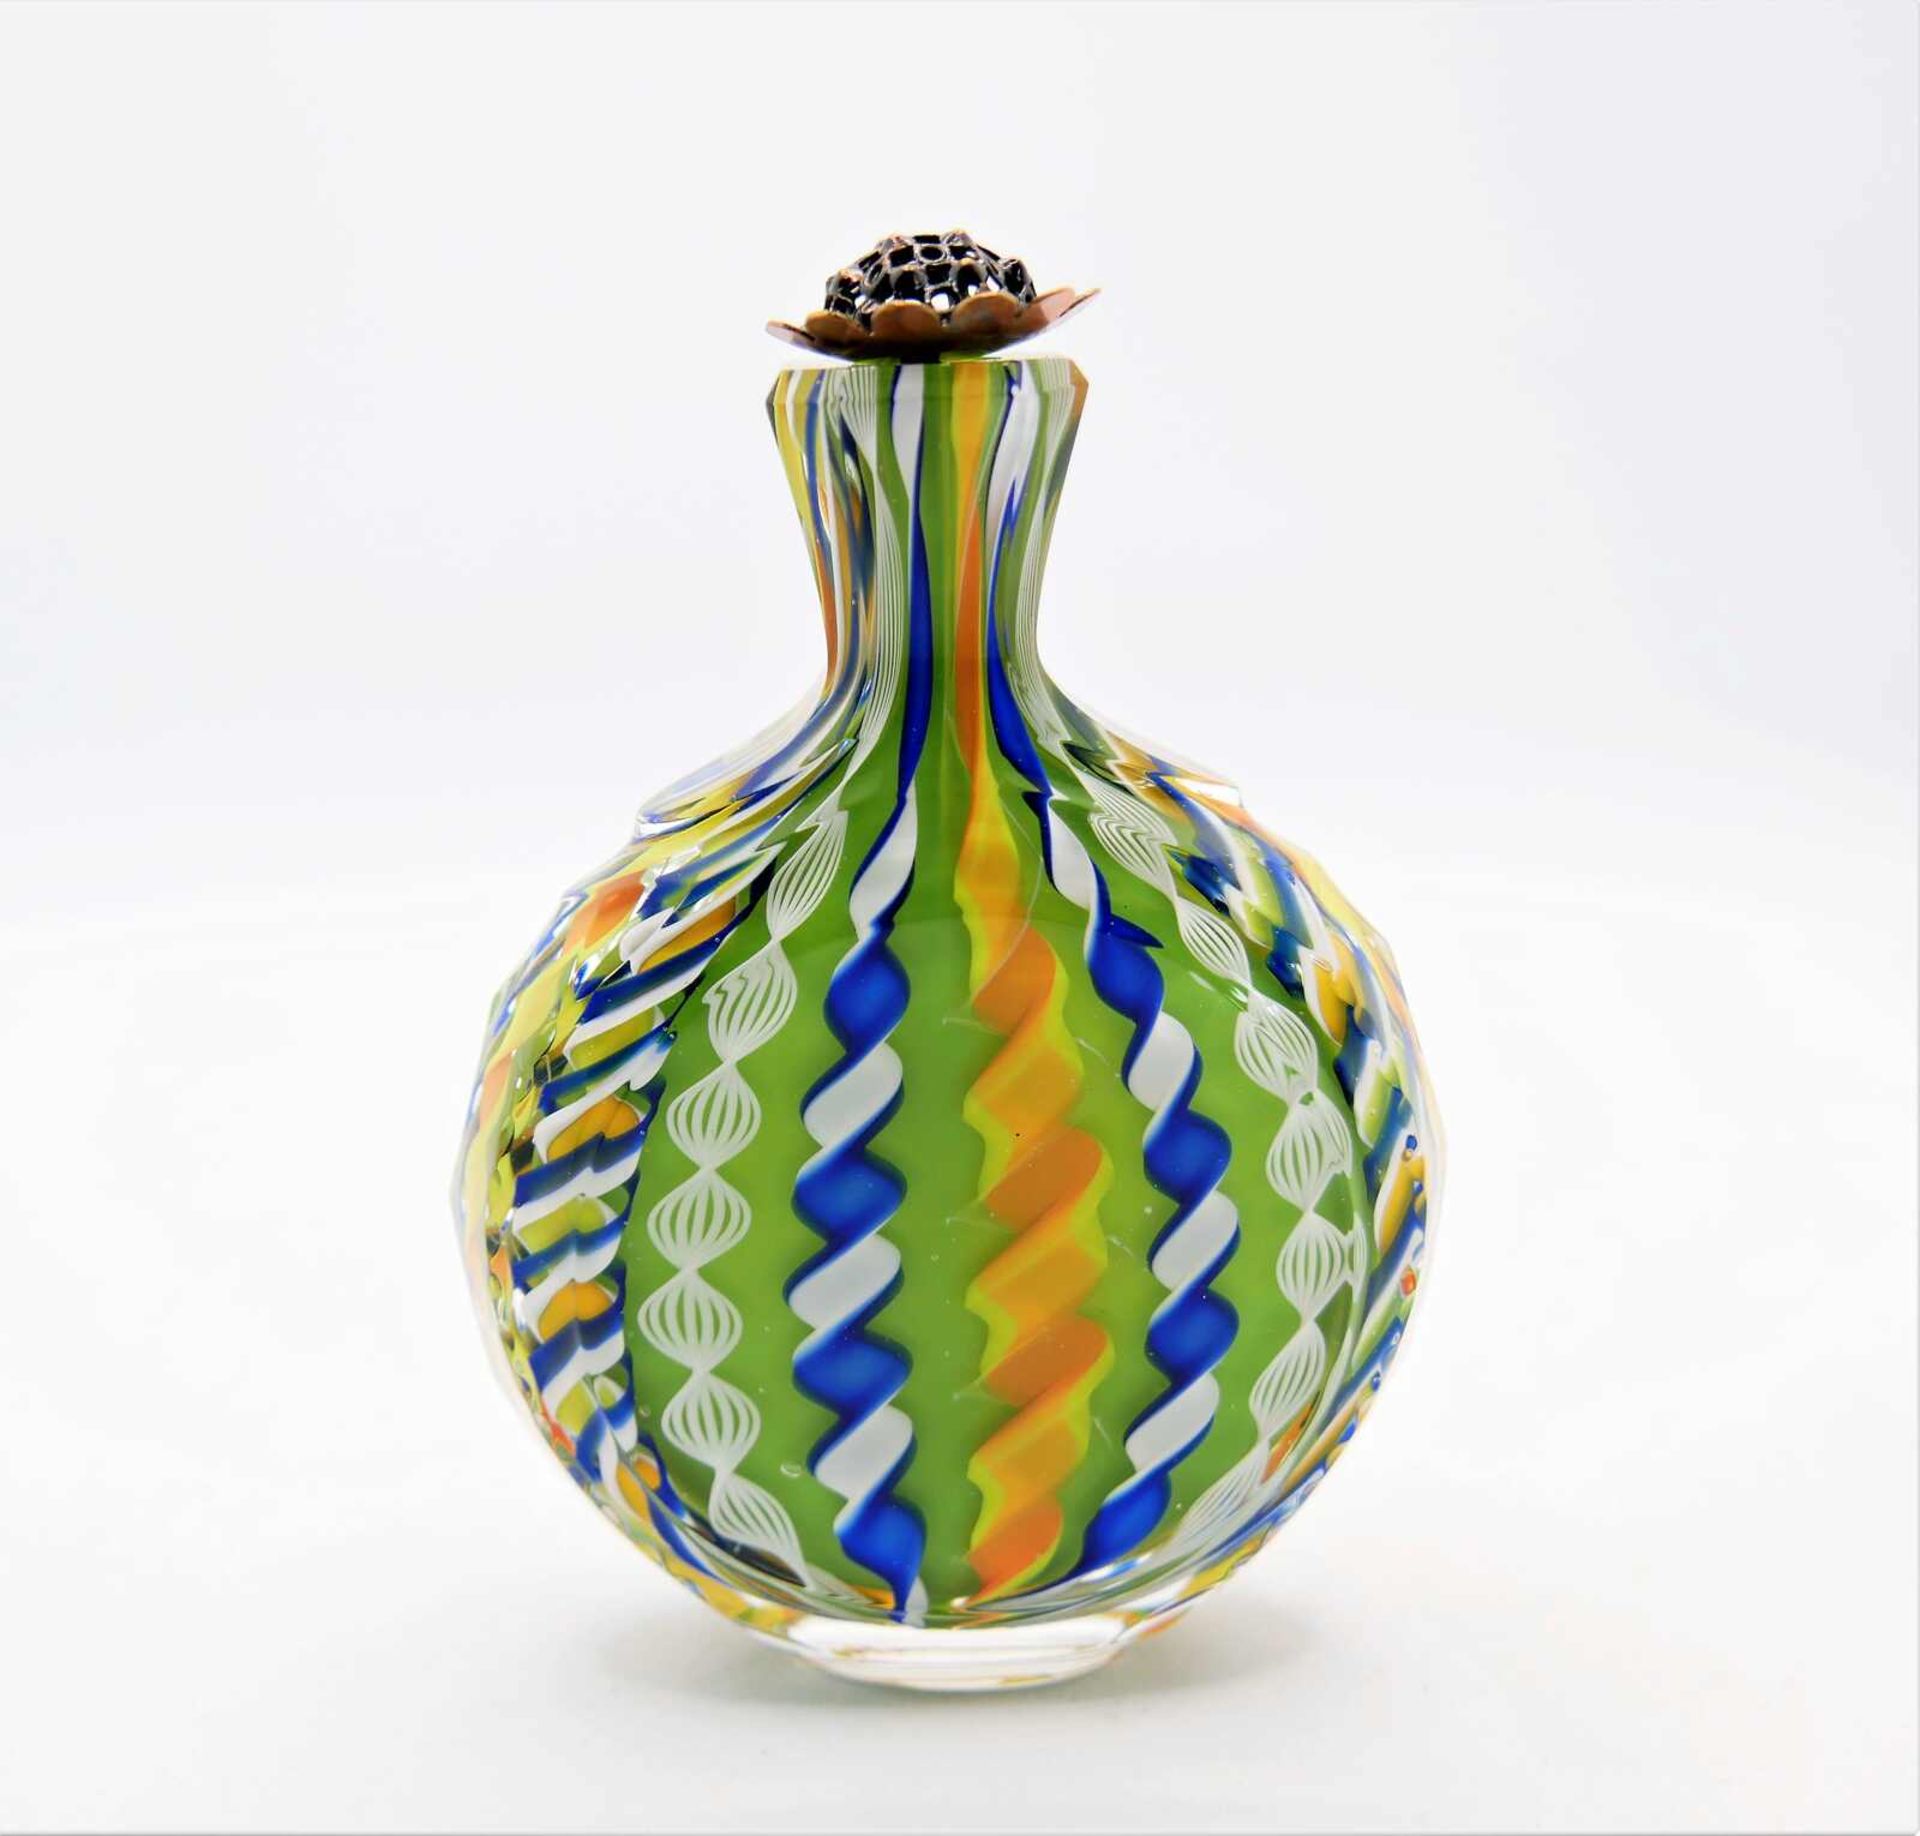 Schnupftabakflasche Glas aus Sammlung, Bixl, grün/orange/gelb/blau/weiß, mit Stöpsel. Bayrischer